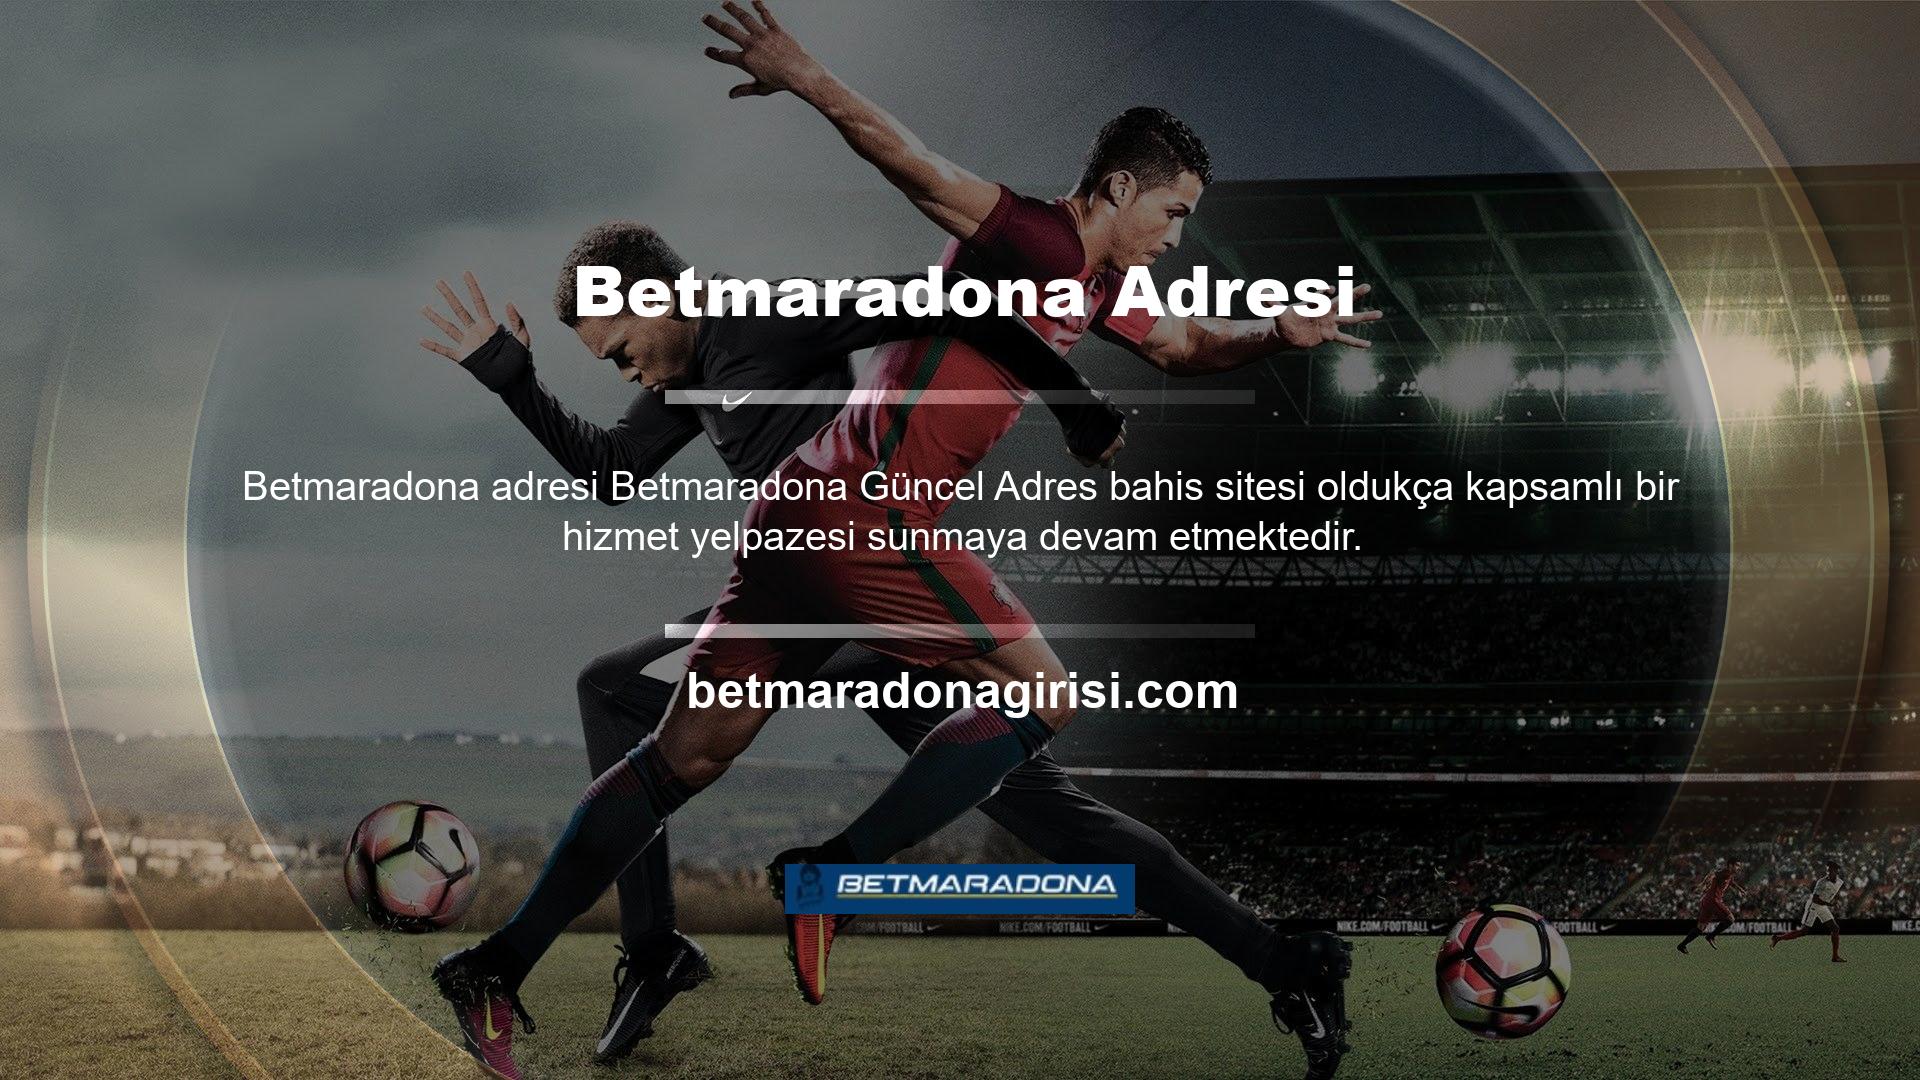 Betmaradona oyun sitesi diğer tüm oyun siteleri gibi oyun ve casino bölümünde de faaliyet göstermeye devam etmektedir